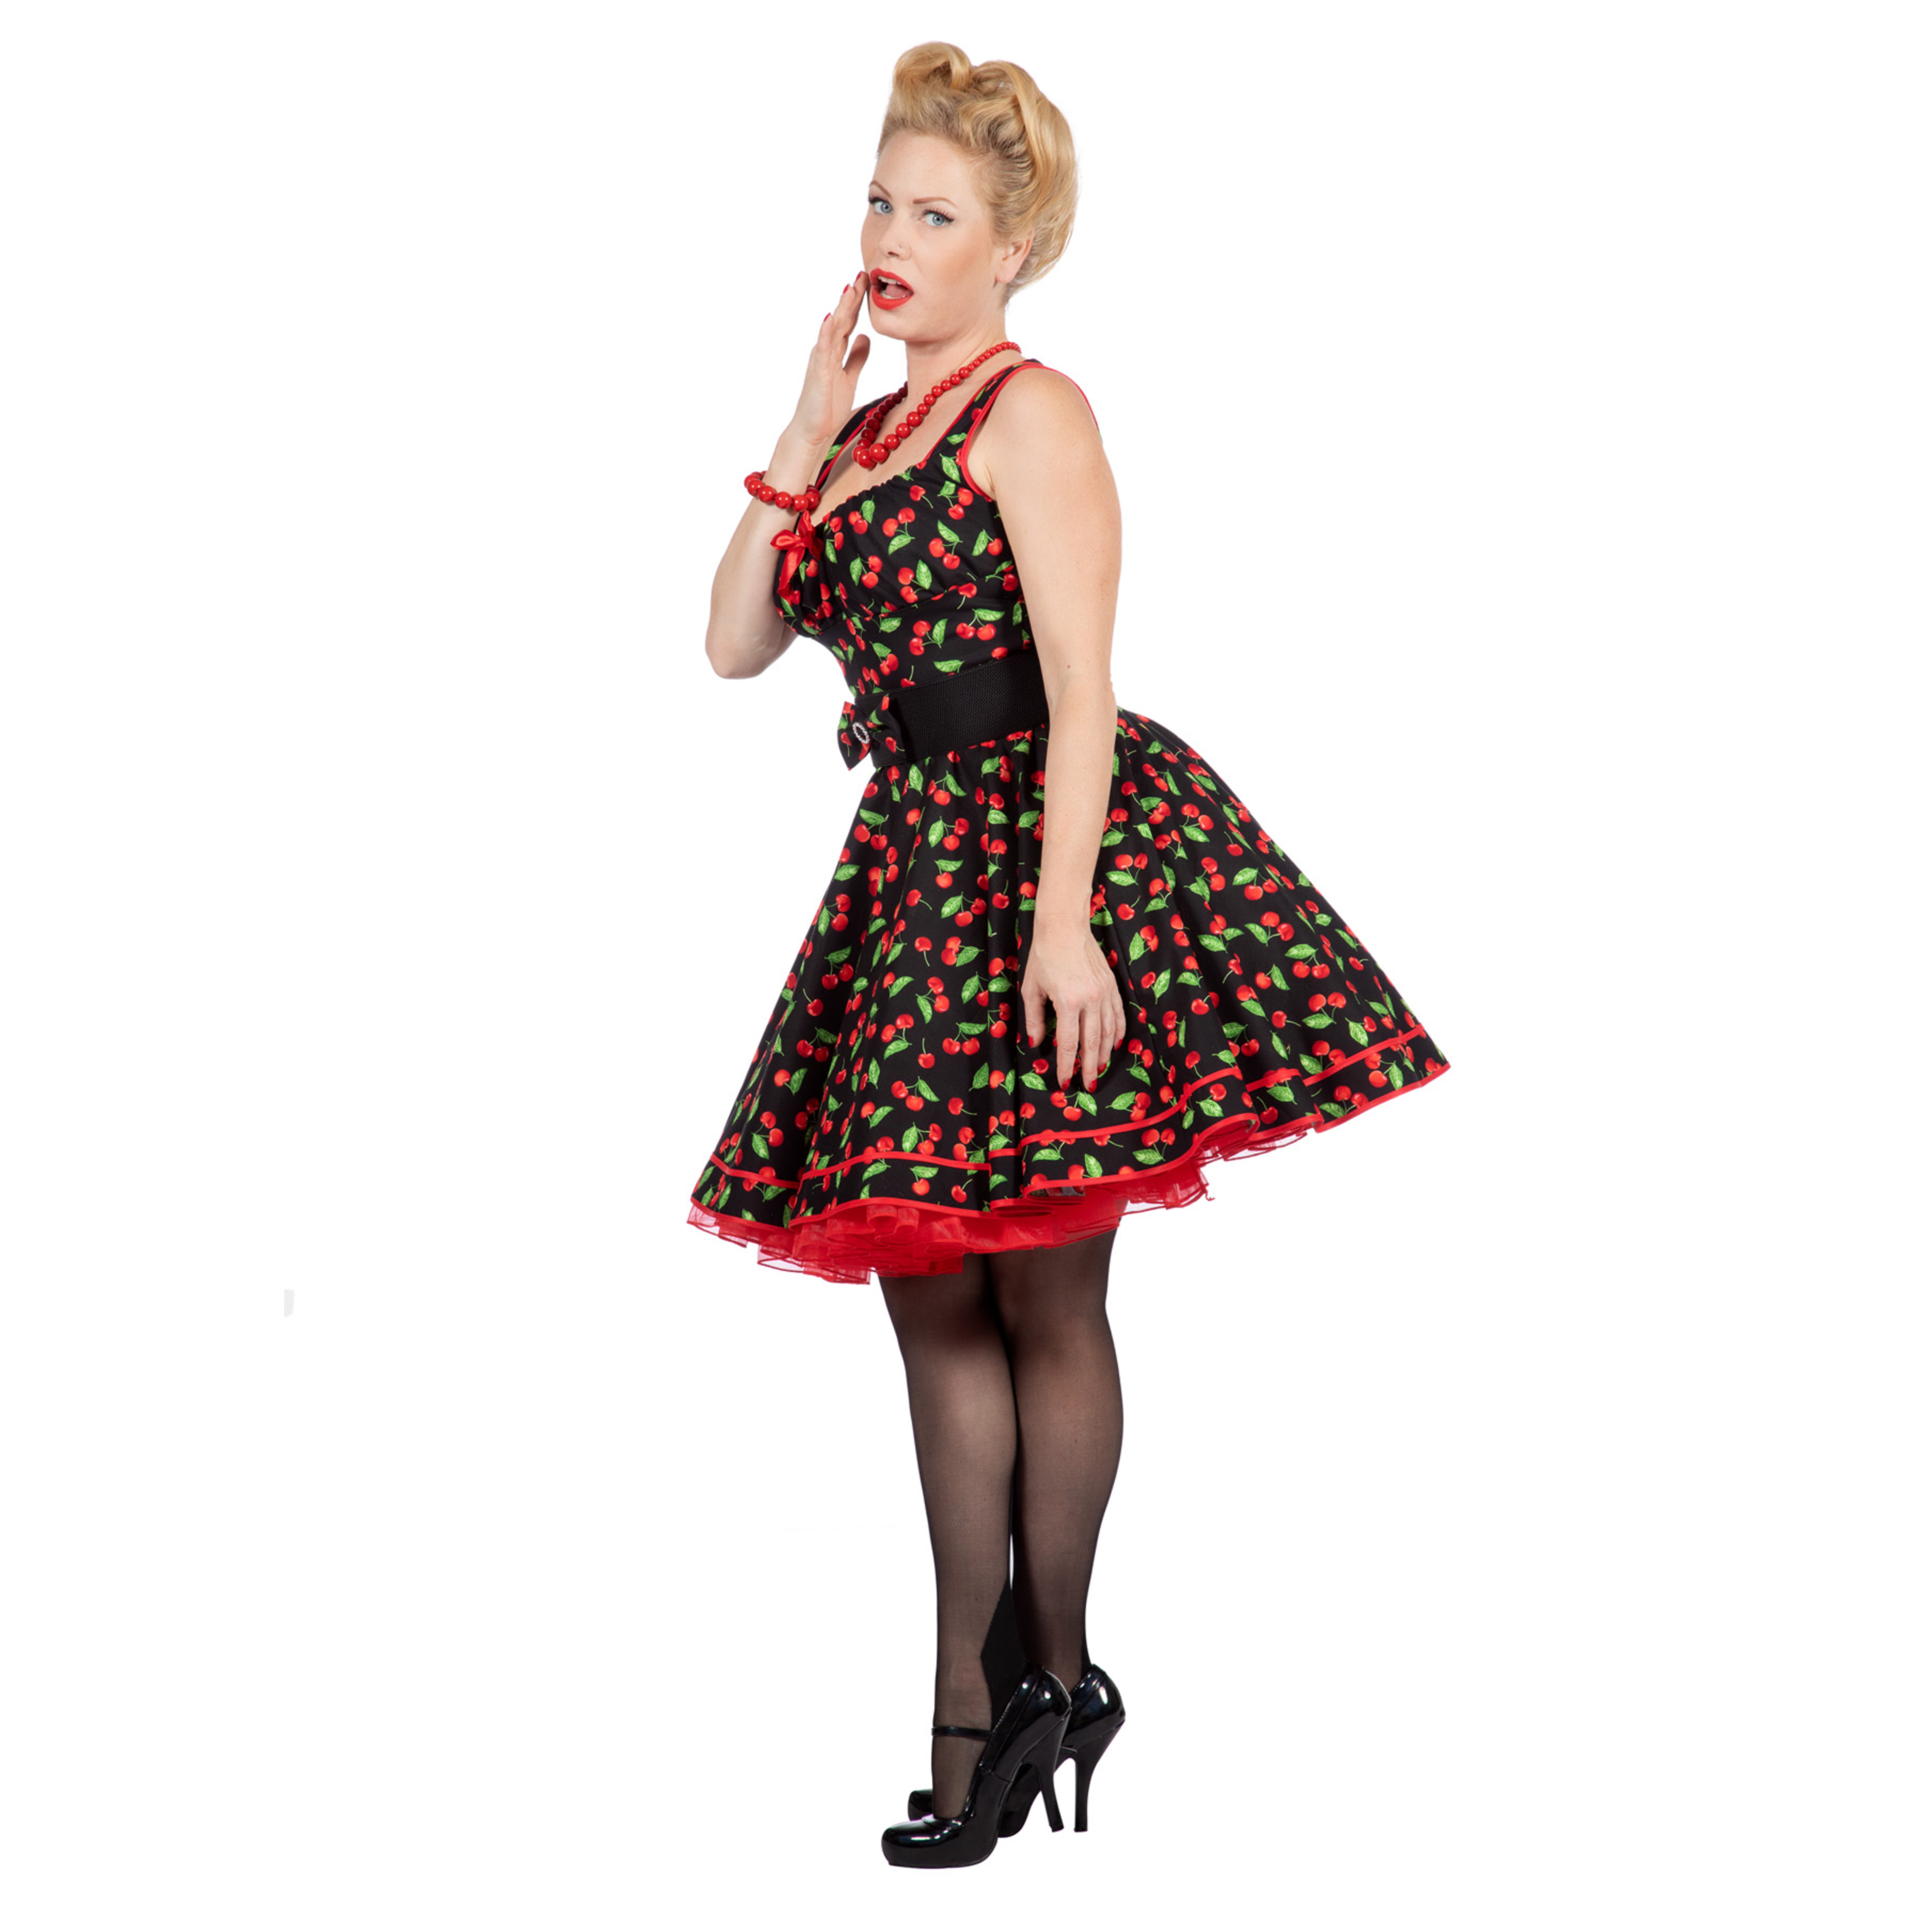 Premium-Line Damen-Kleid Rockabilly Cherry, Gr. 40 Bild 2